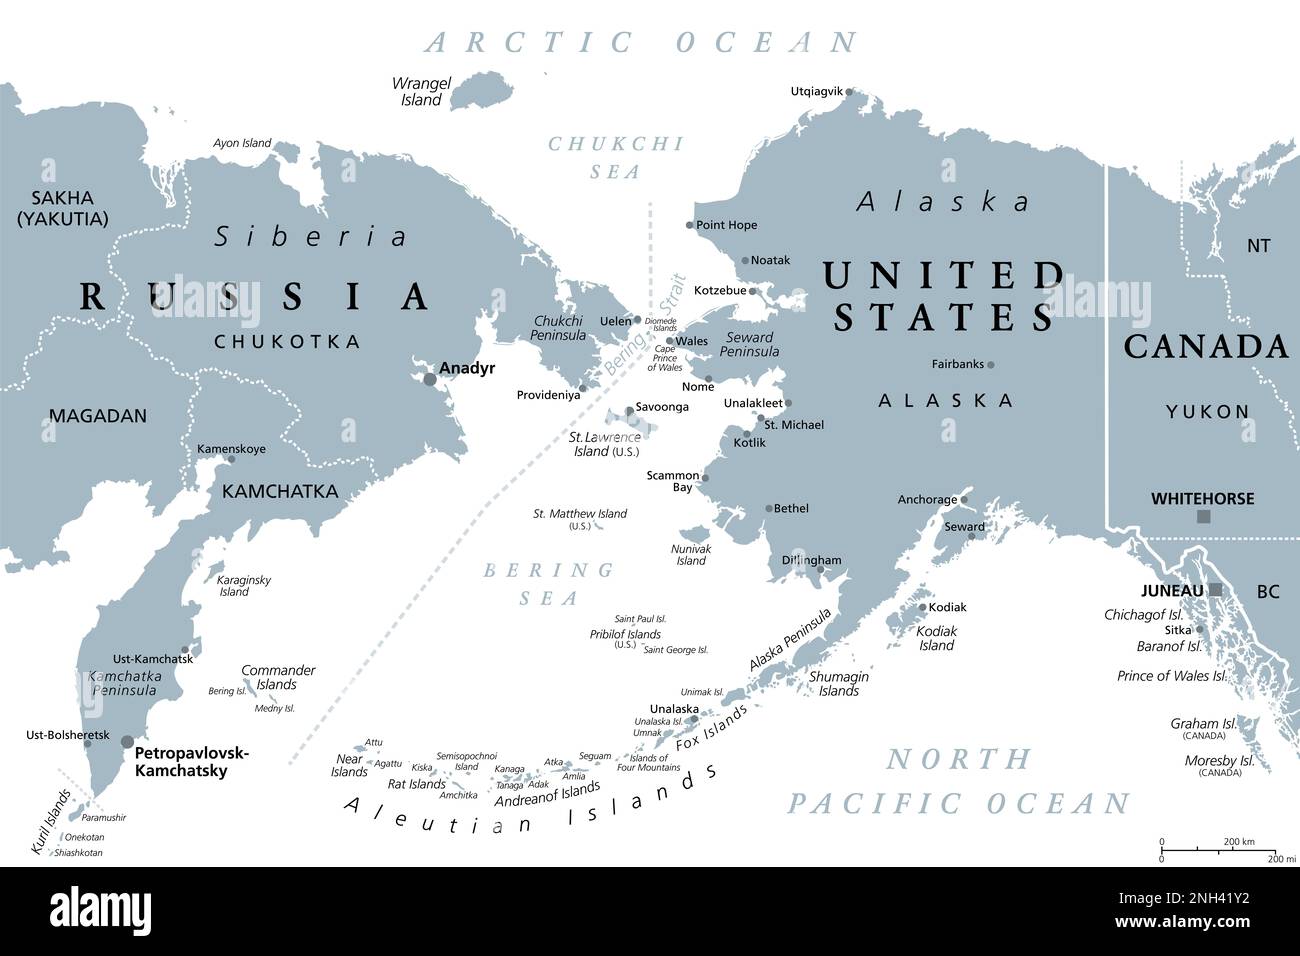 Rusia y Estados Unidos, frontera marítima, mapa político. Península de Chukchi de Rusia, y península de Seward de Alaska, separados por el estrecho de Bering. Foto de stock